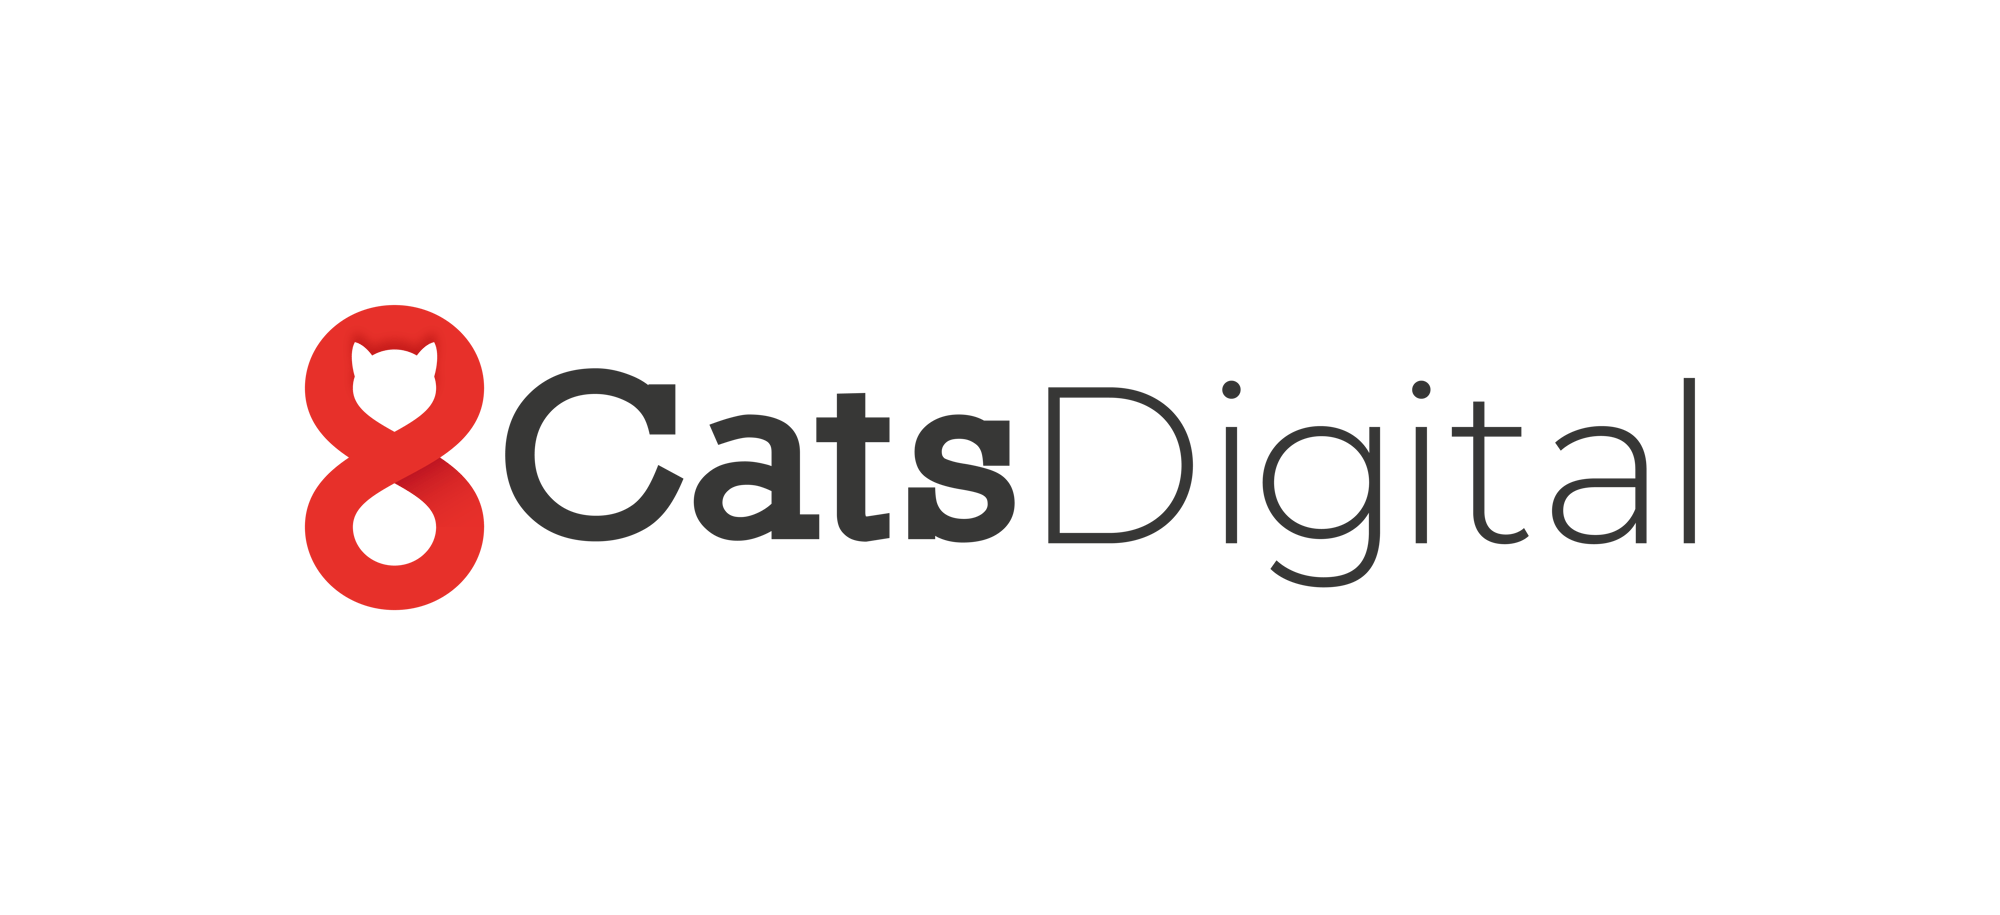 8 Cats Digital Logo